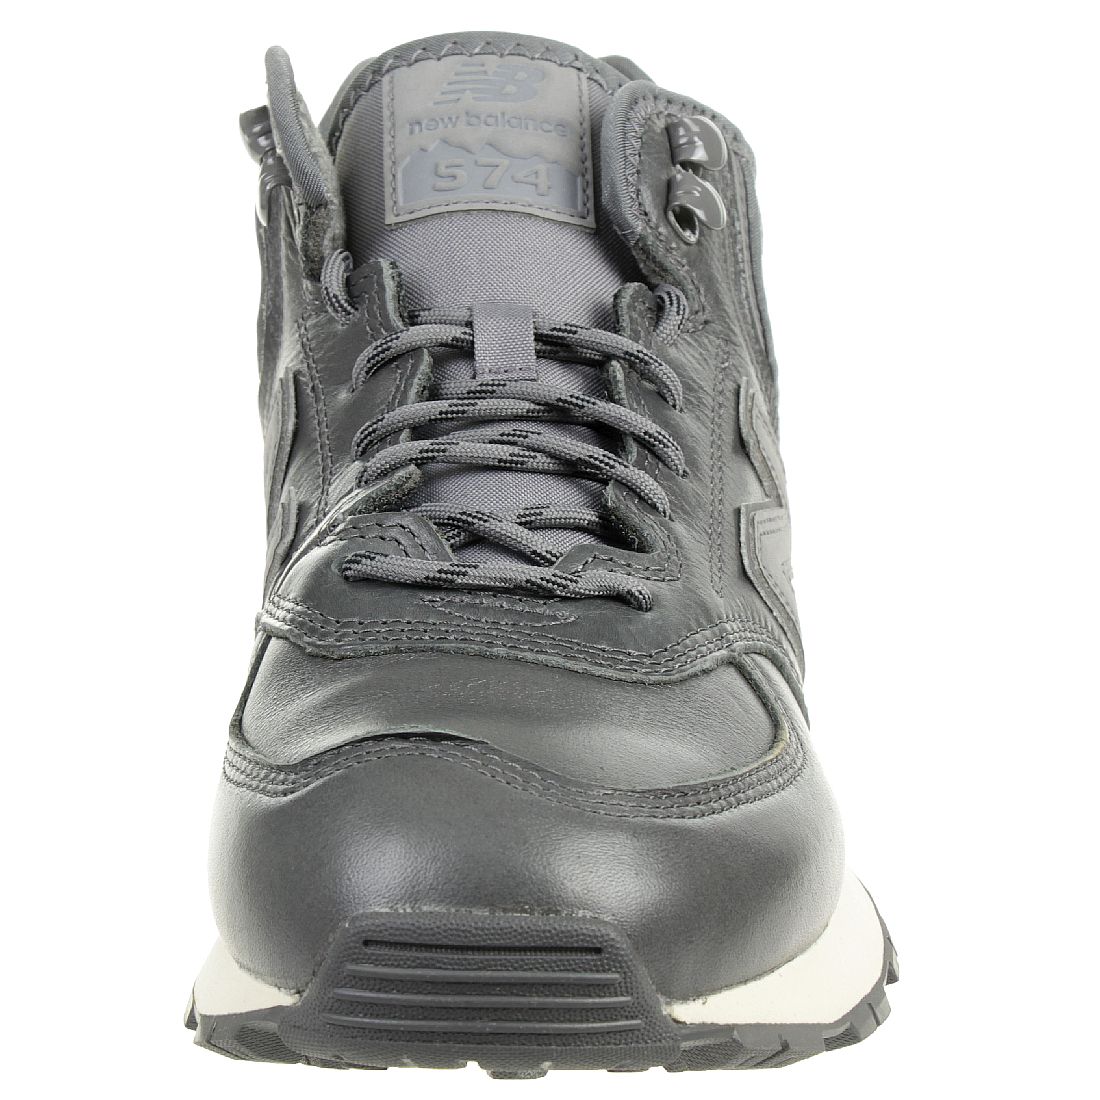 New Balance MH574 OAA Classic Sneaker Winter Schuhe gefüttert